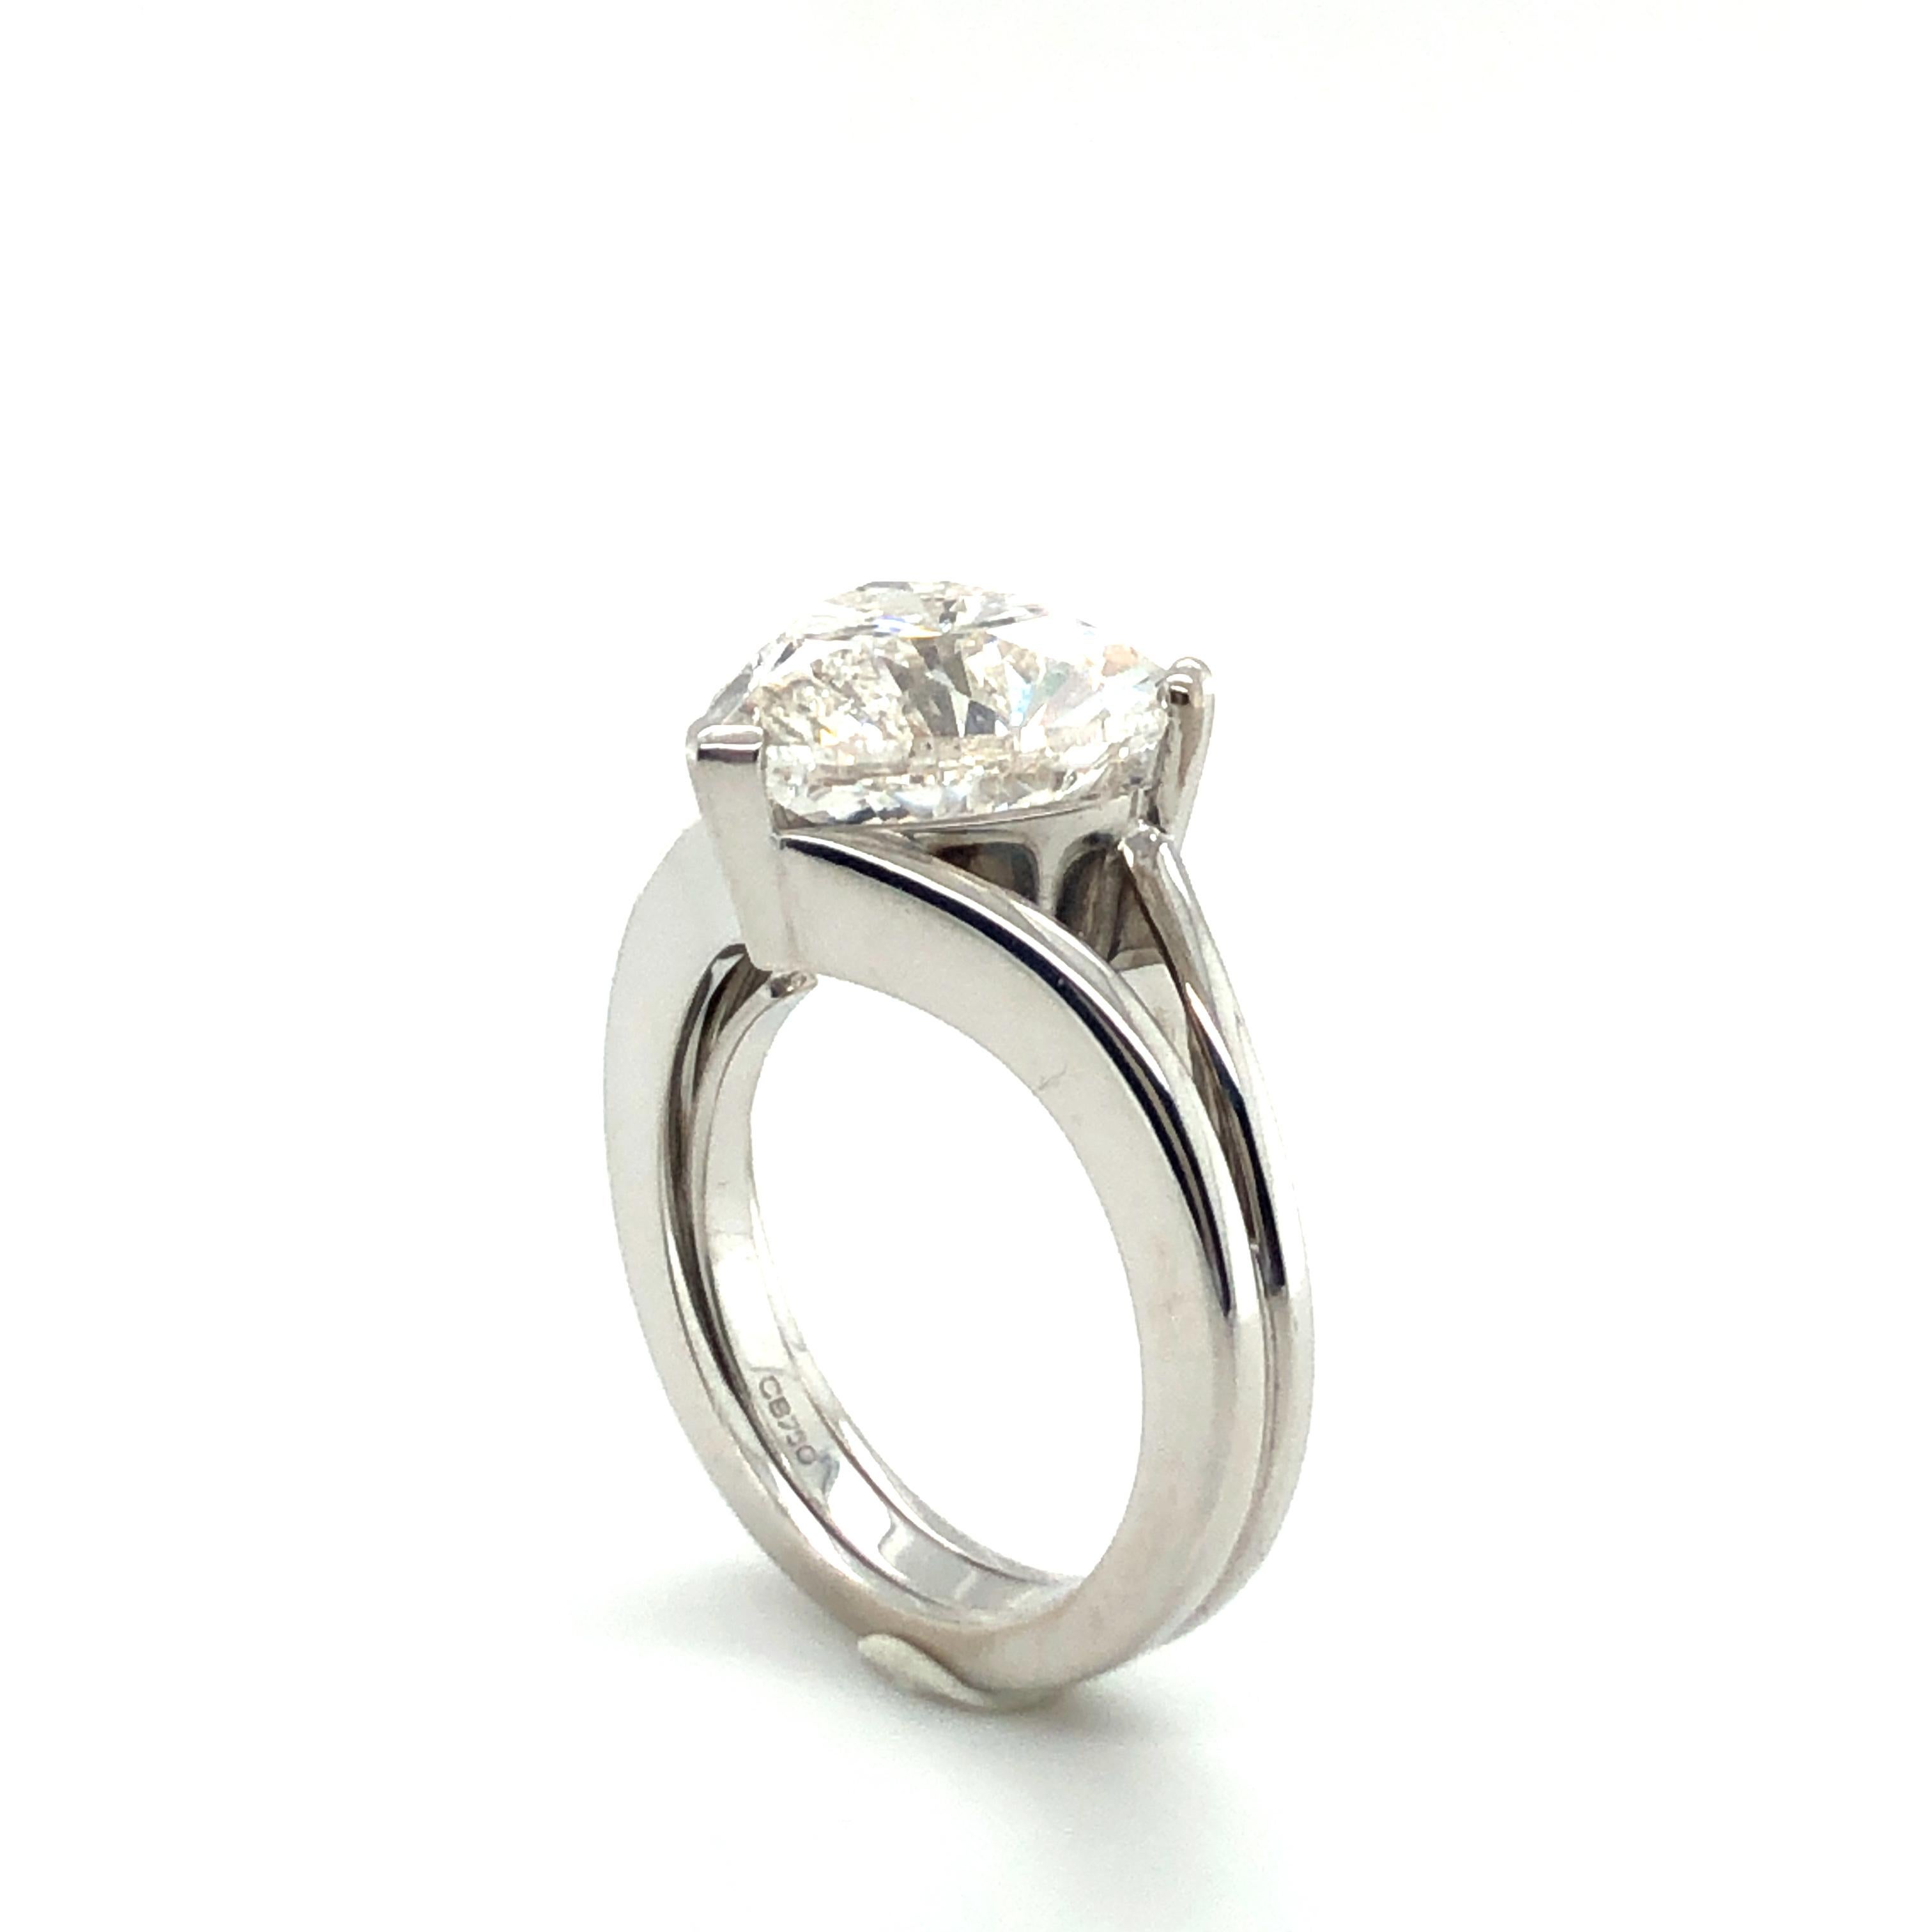 GIA Certified 5.04 Carat Heart-Shaped Diamond Ring in 18 Karat White Gold 3